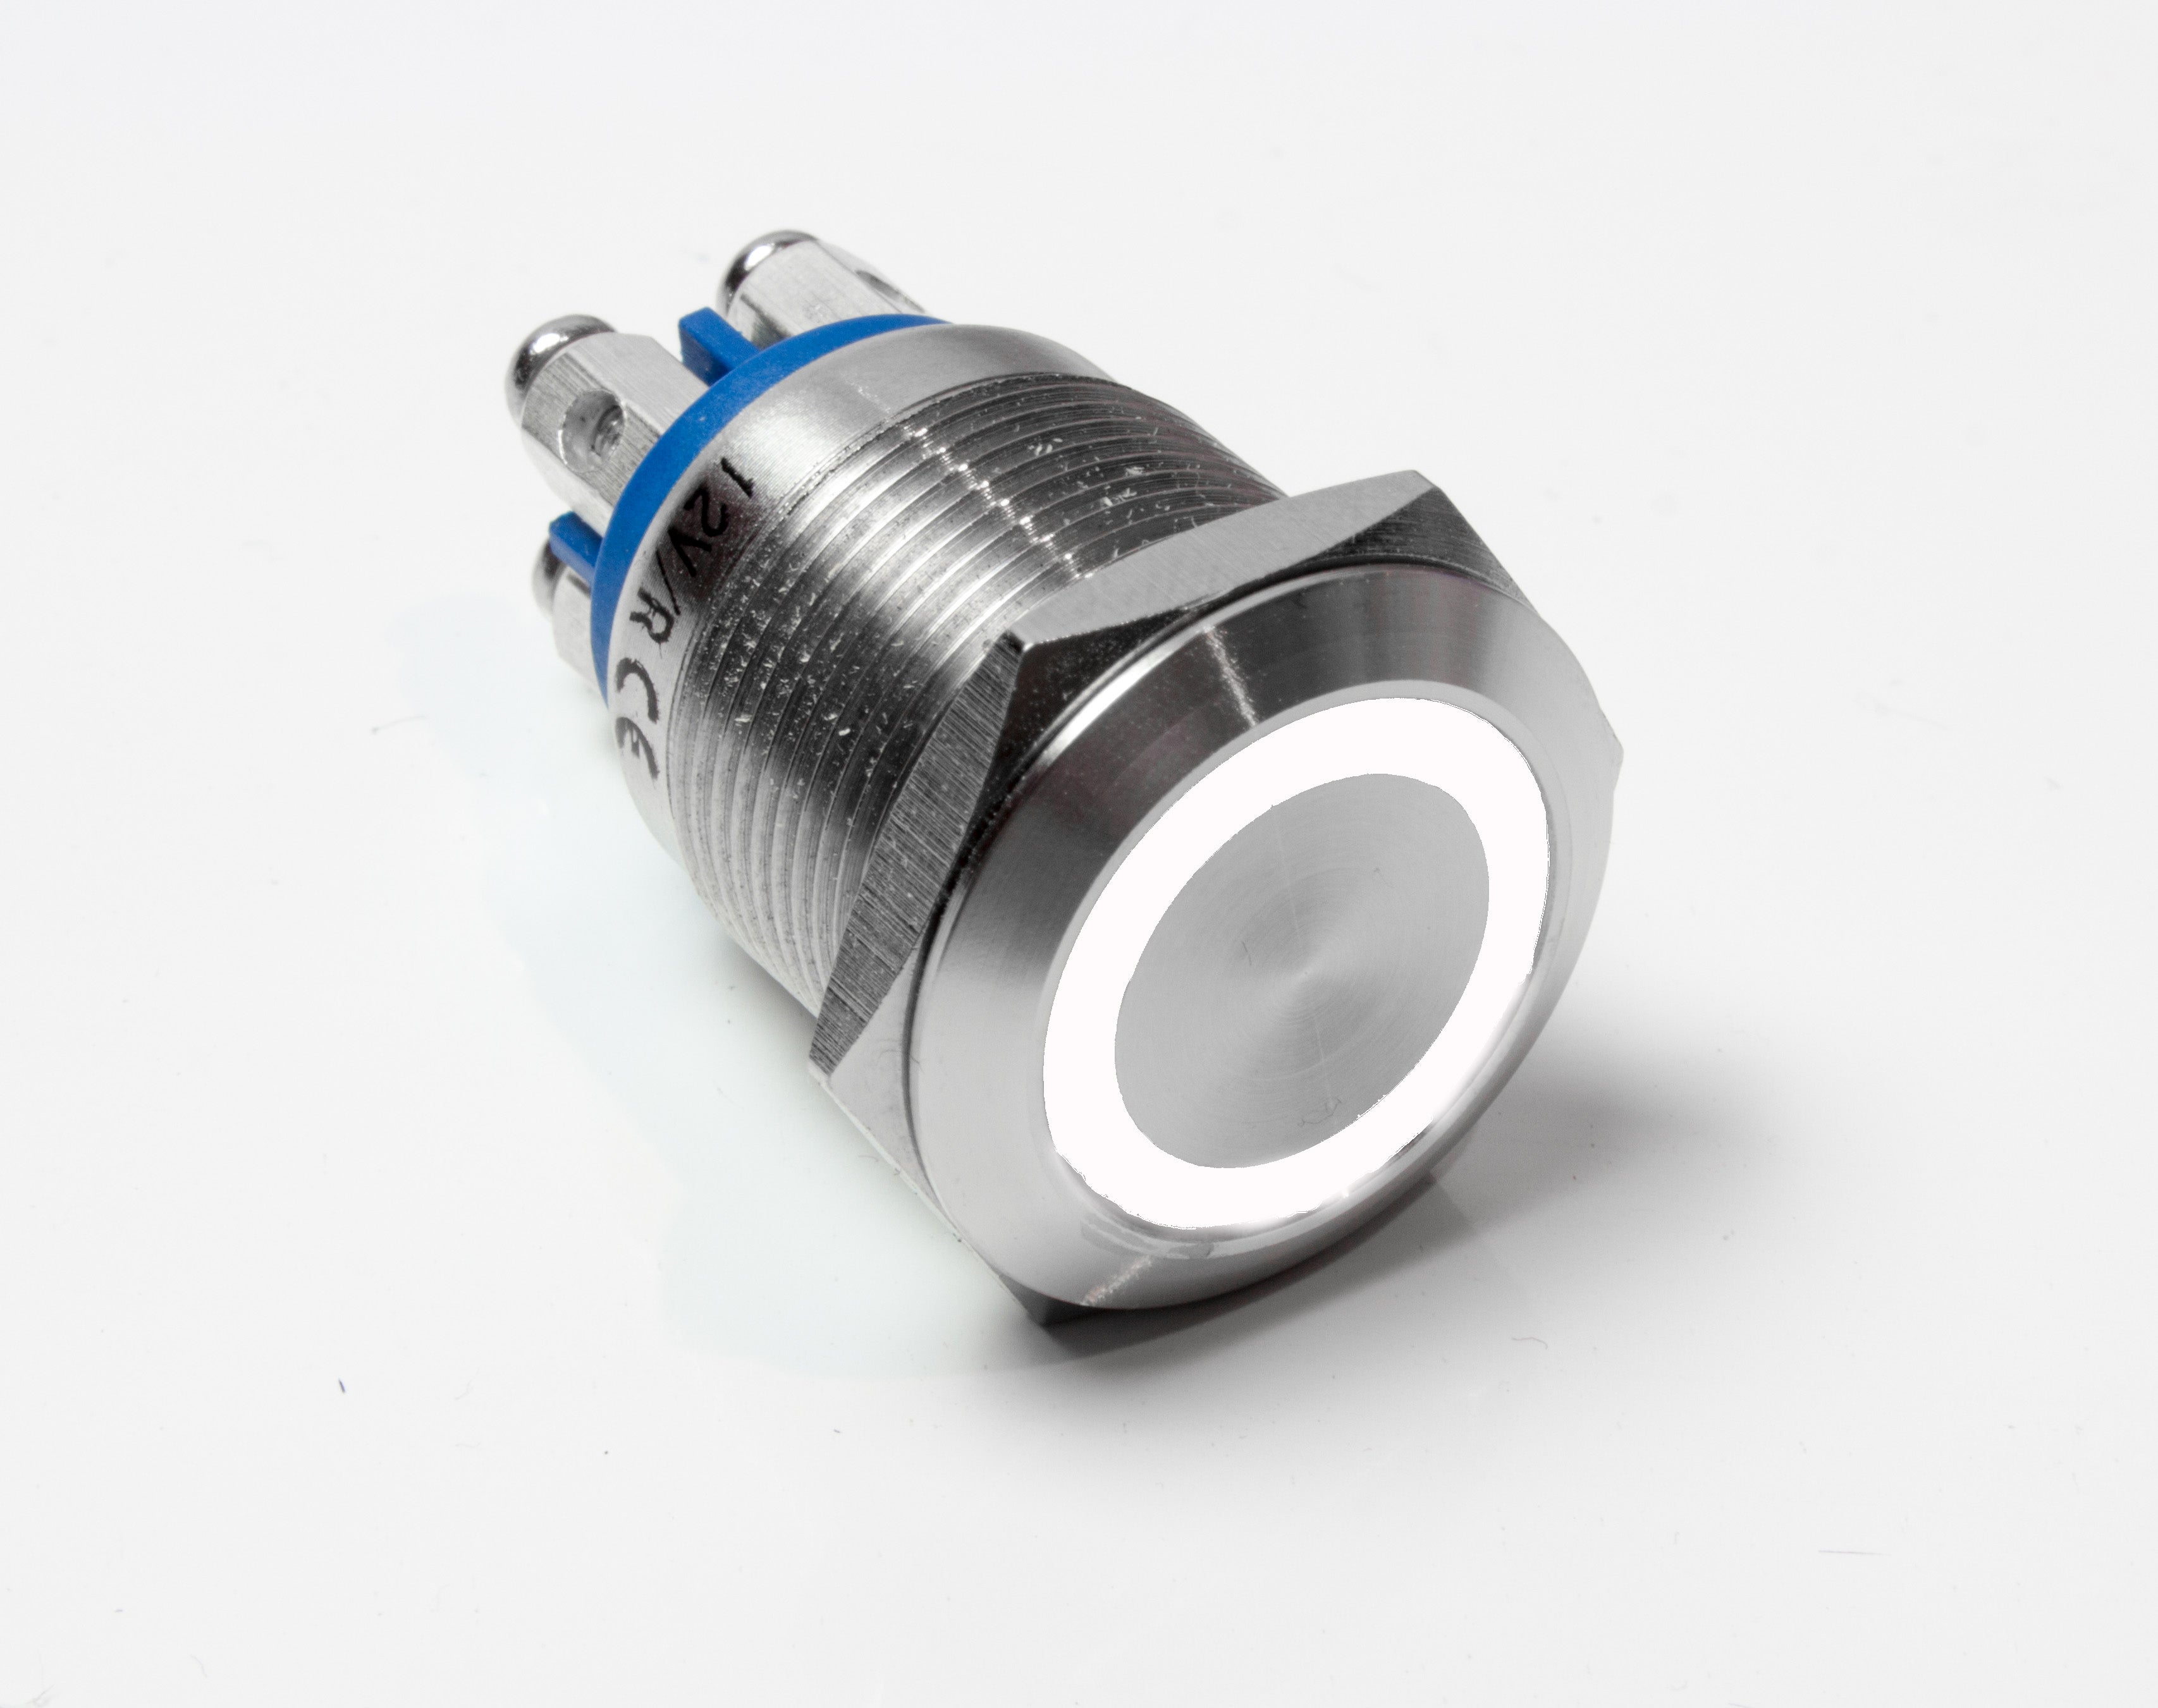 LED Taster - mit Schraubkontakten - 19 mm Durchmesser - IP 67